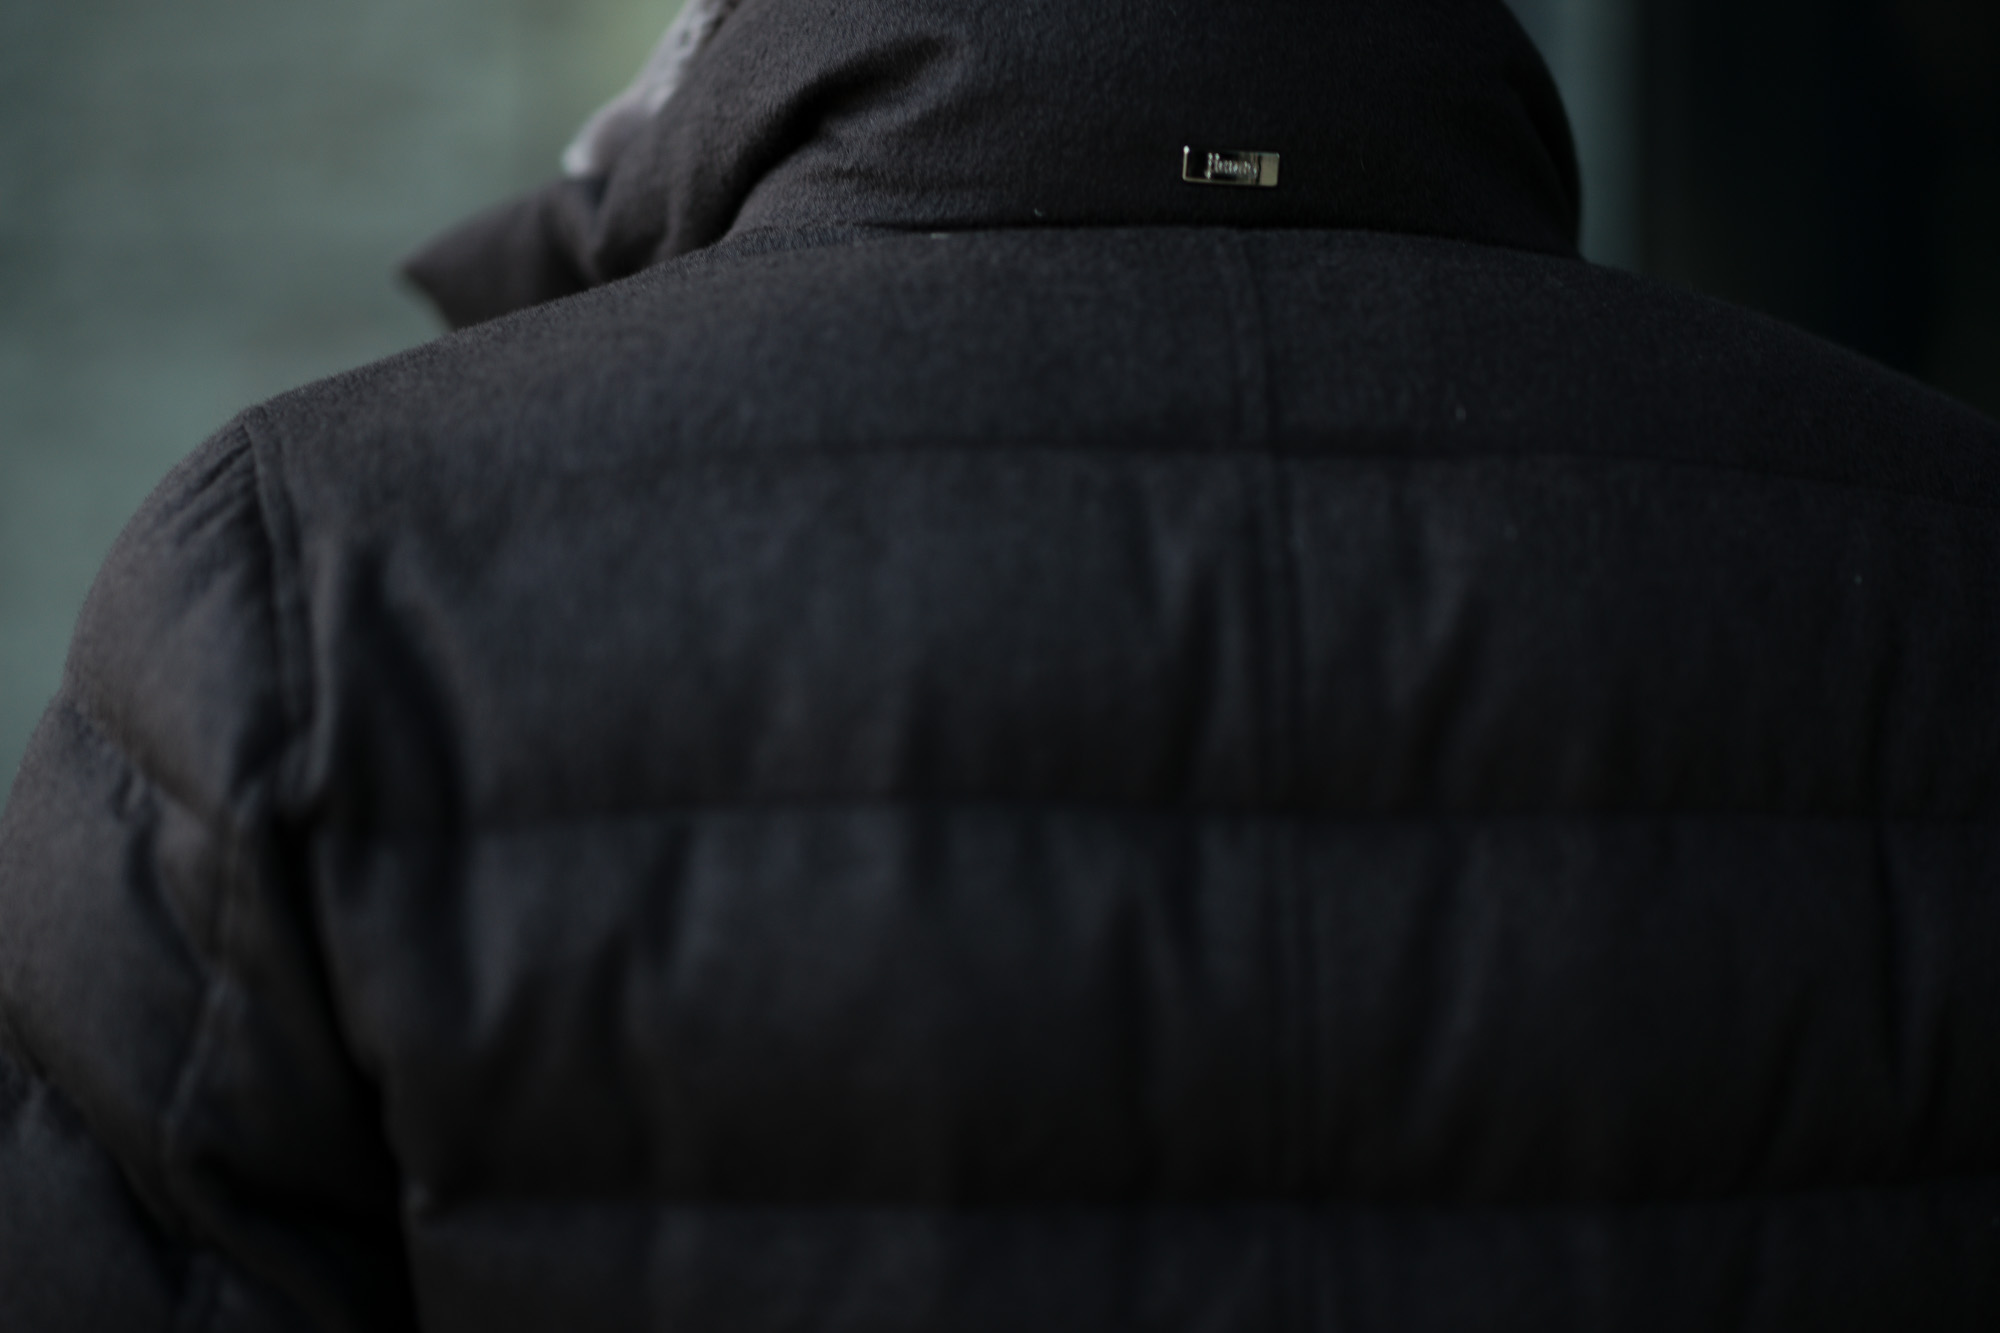 HERNO(ヘルノ) PI0584U Silk Cashmere Down coat (シルク カシミア ダウン コート) PIACENZA (ピアツェンツァ) DROP GLIDE NYLON ULTRALIGHT 撥水 シルク カシミア ダウン コート BLACK (ブラック・9300) Made in italy (イタリア製) 2019 秋冬新作 alto e dirittoアルトエデリット 42,44,46,48,50,52　愛知 名古屋